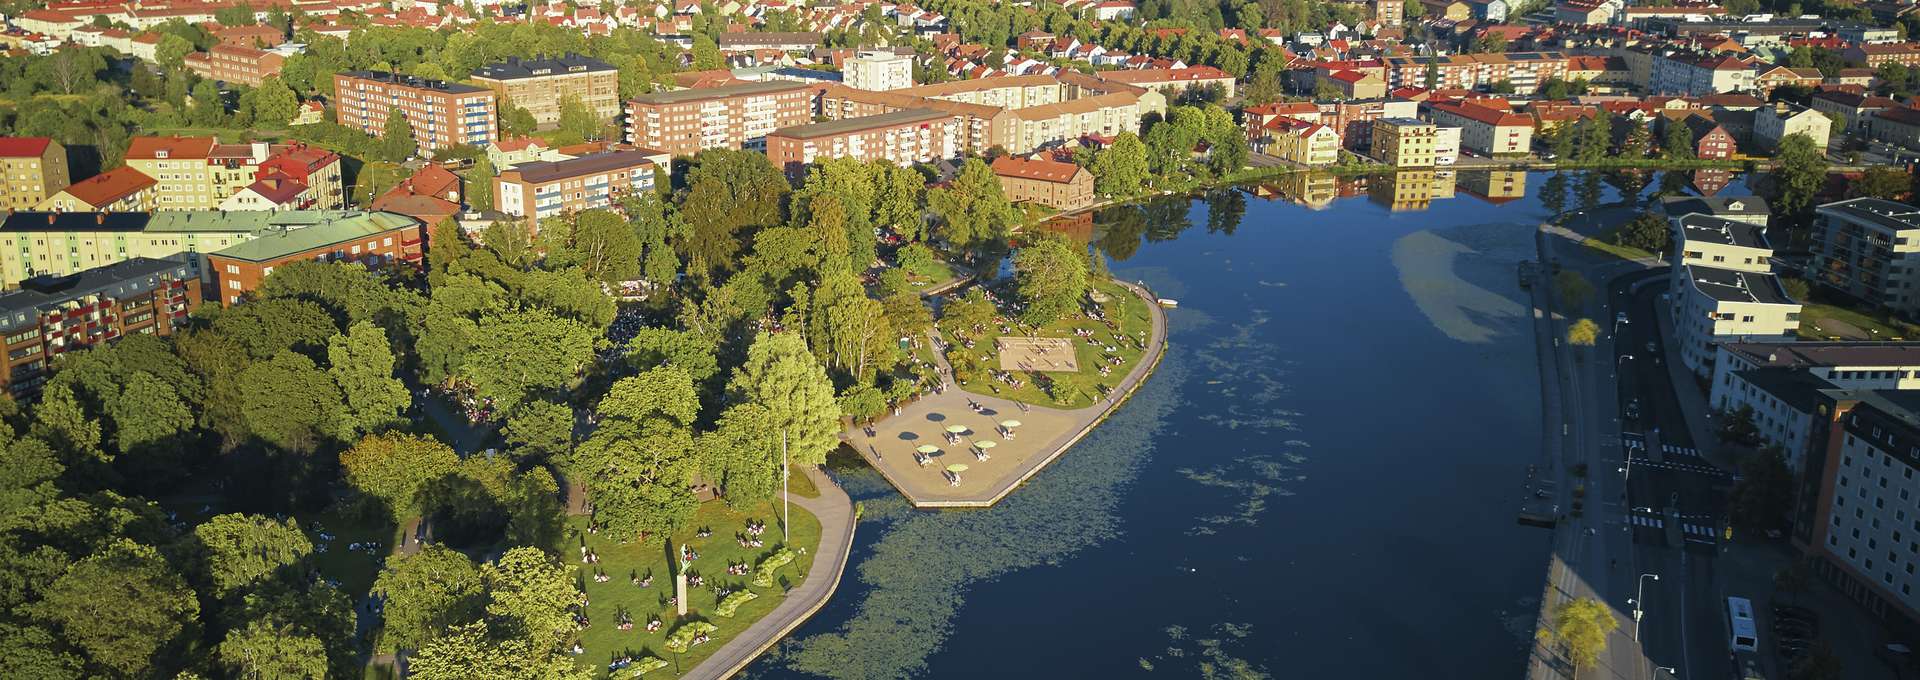 Drönarbild över Eskilstuna men fokus på Stadsparken